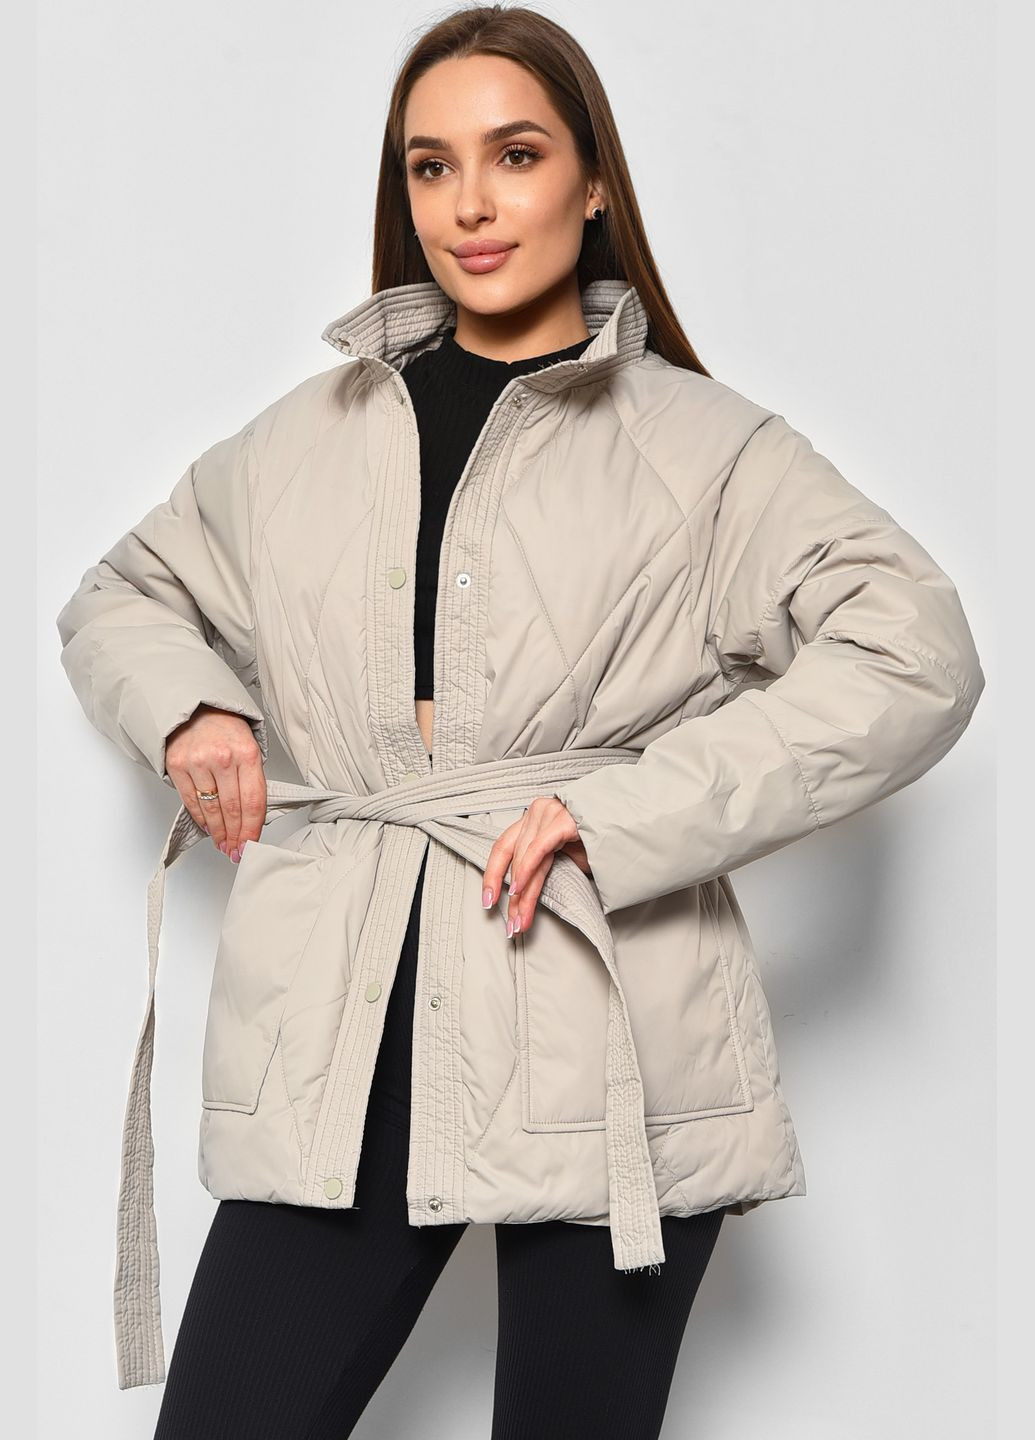 Оливковая демисезонная куртка женская демисезонная полубатальная оливкового цвета Let's Shop